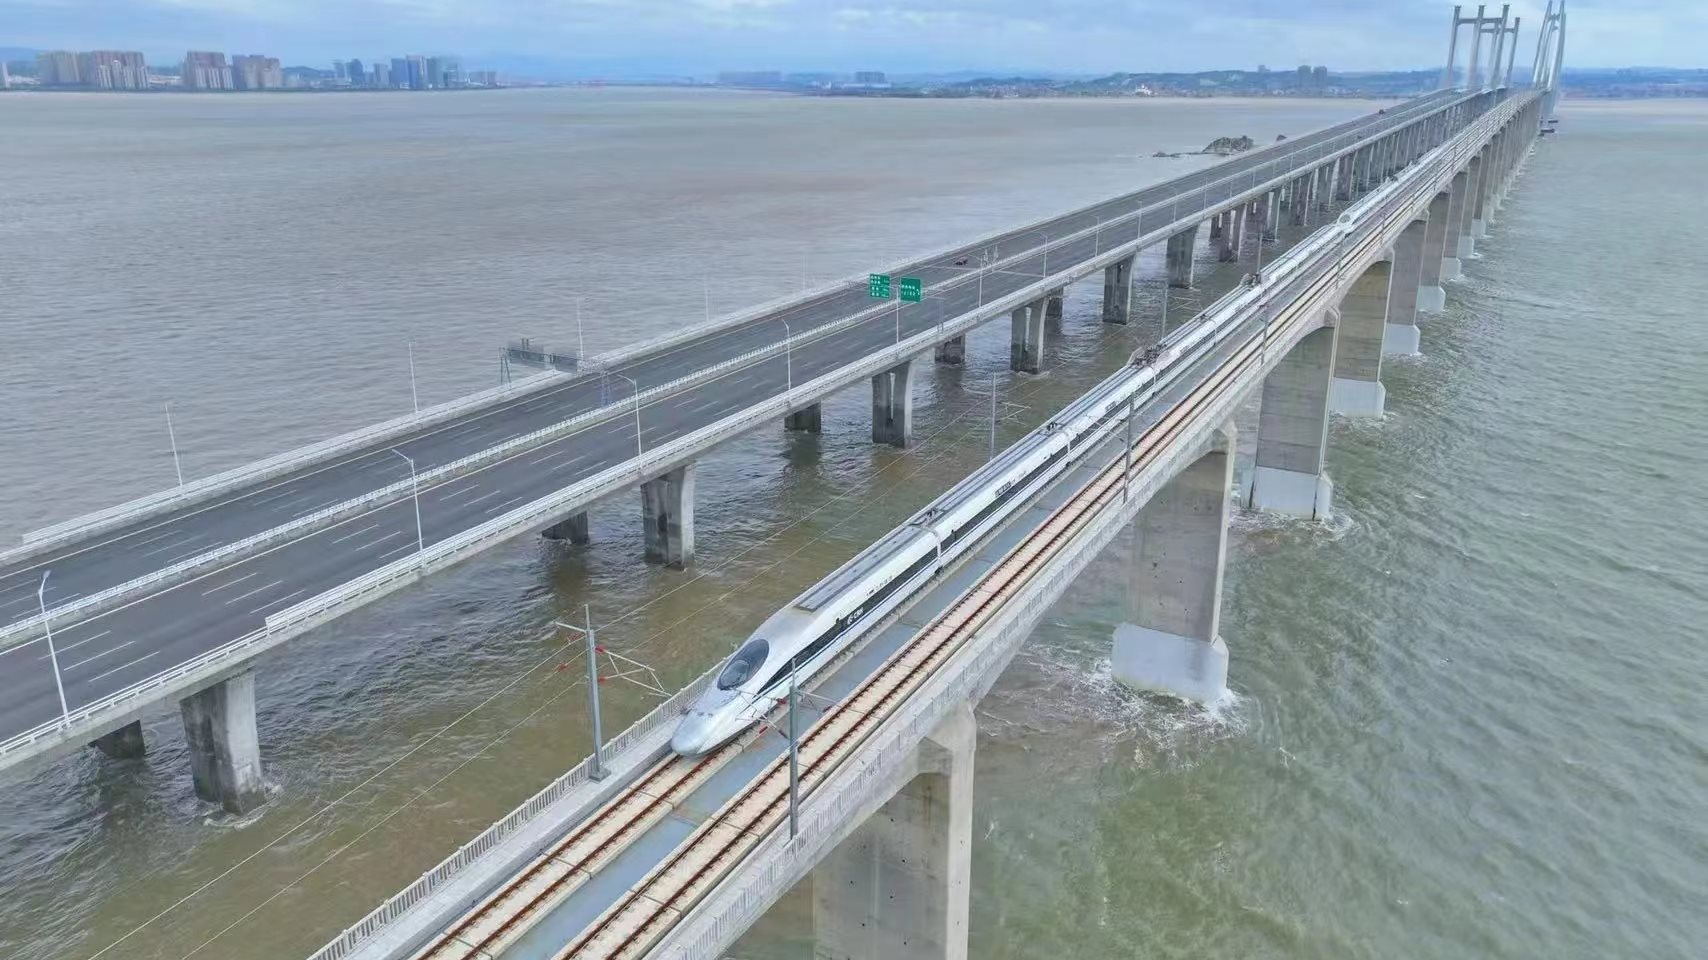 Trung Quốc chính thức chạy thử nghiệm tuyến đường sắt cao tốc vượt biển đầu tiên: Dài hơn 277 km, chỉ 5 năm là hoàn thành lắp đặt, dự kiến đi vào hoạt động trong năm nay - Ảnh 1.